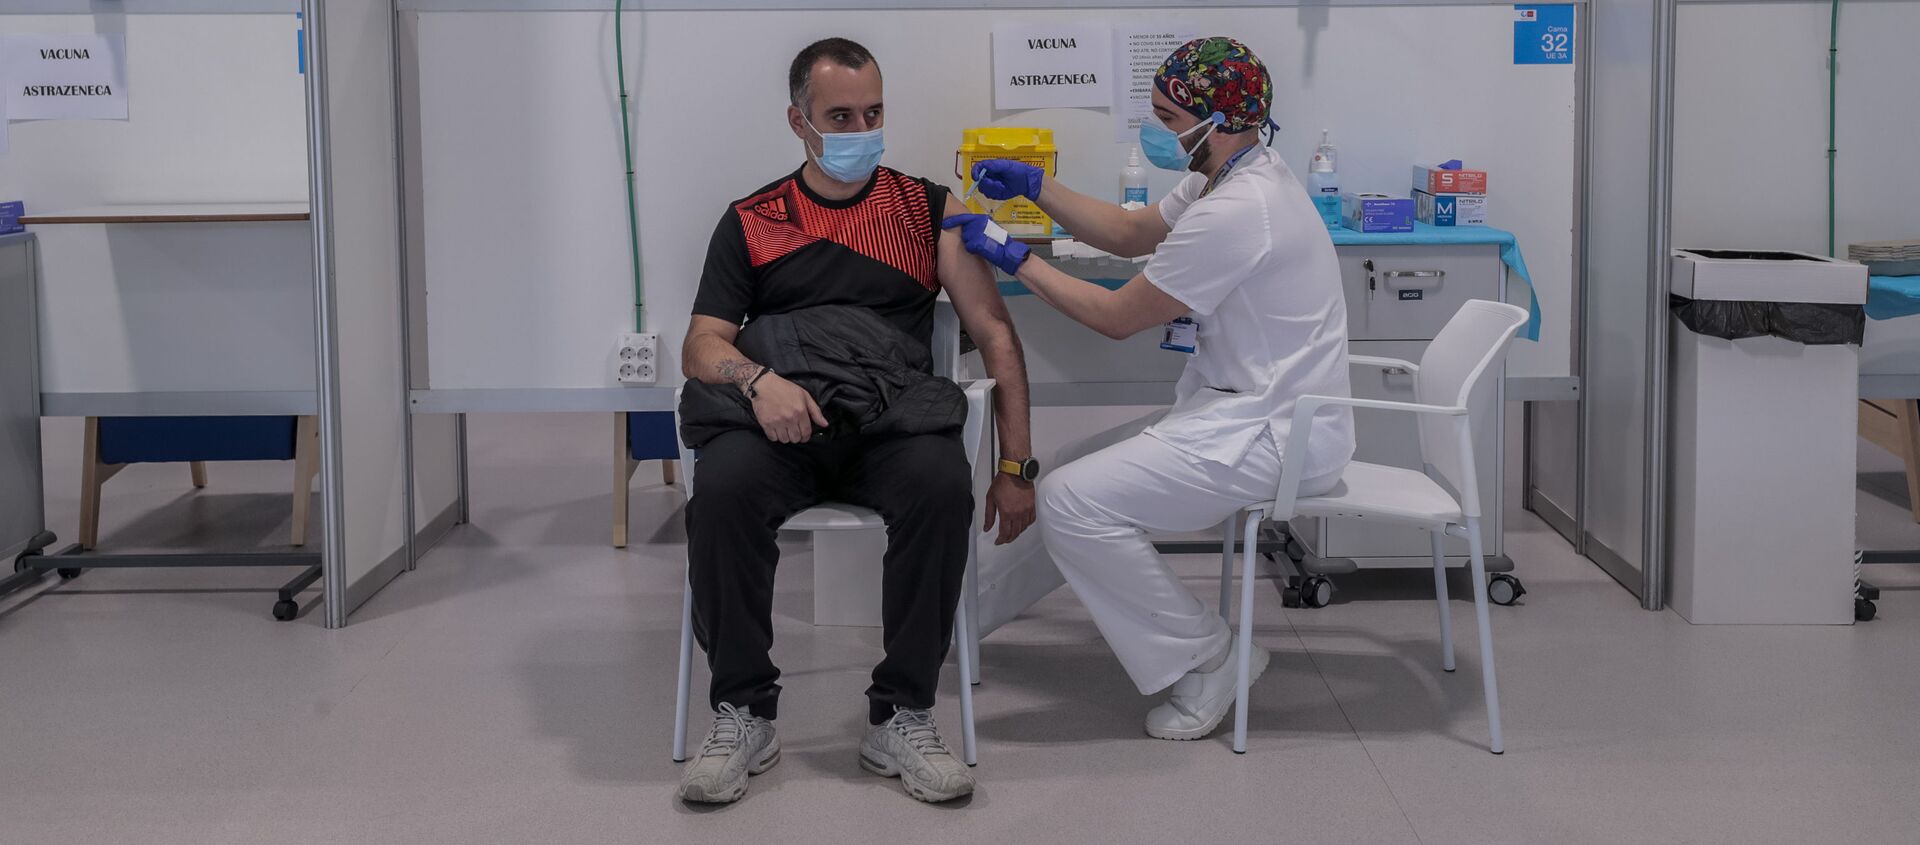 Мужчина получает вакцину AstraZeneca в больнице Мадрида - Sputnik 日本, 1920, 23.03.2021